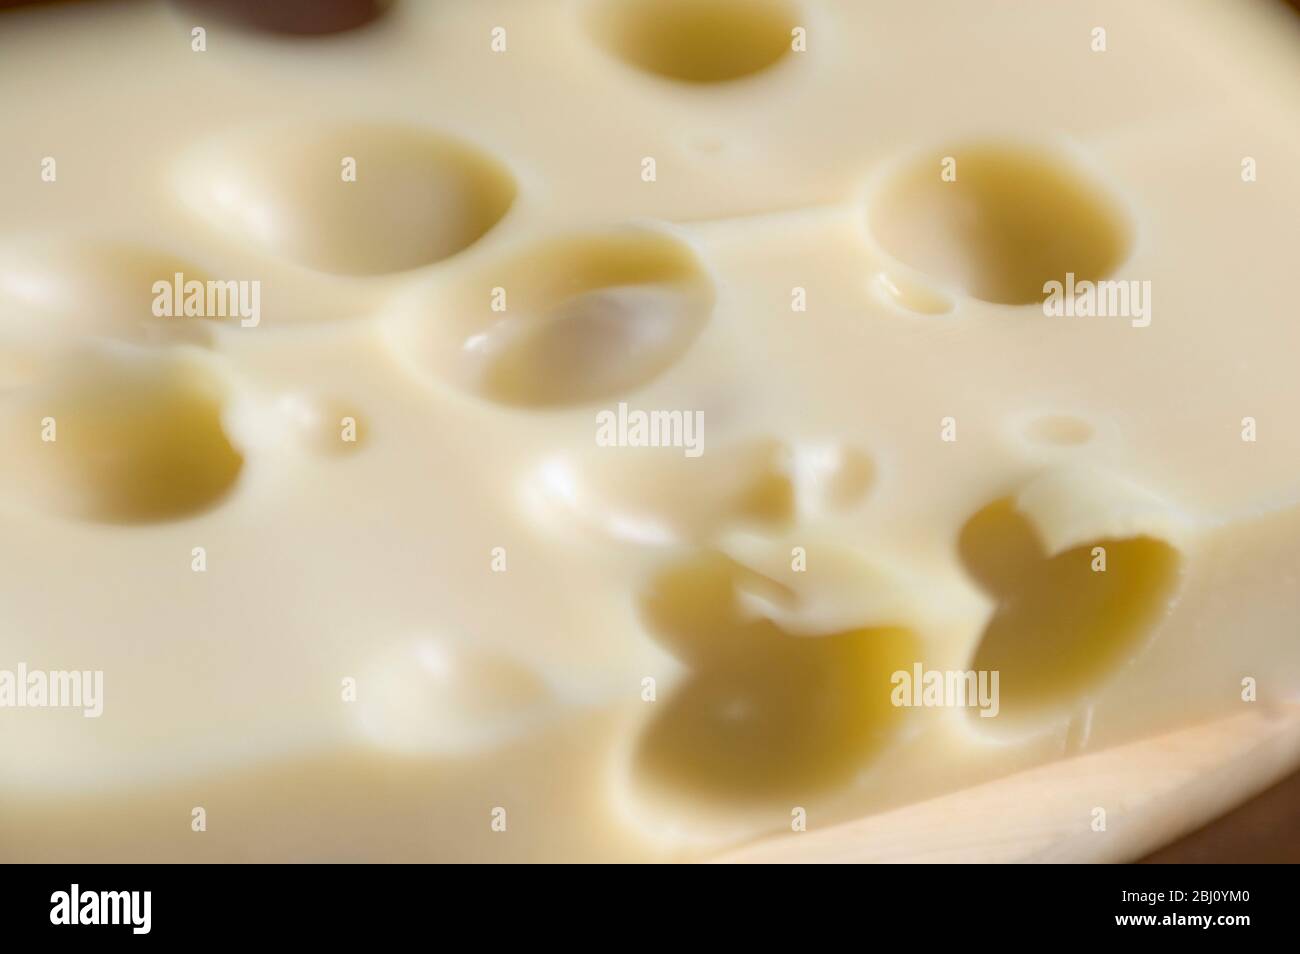 Scheibe Emmentaler Käse mit Linse für kurze Schärfentiefe - Stockfoto